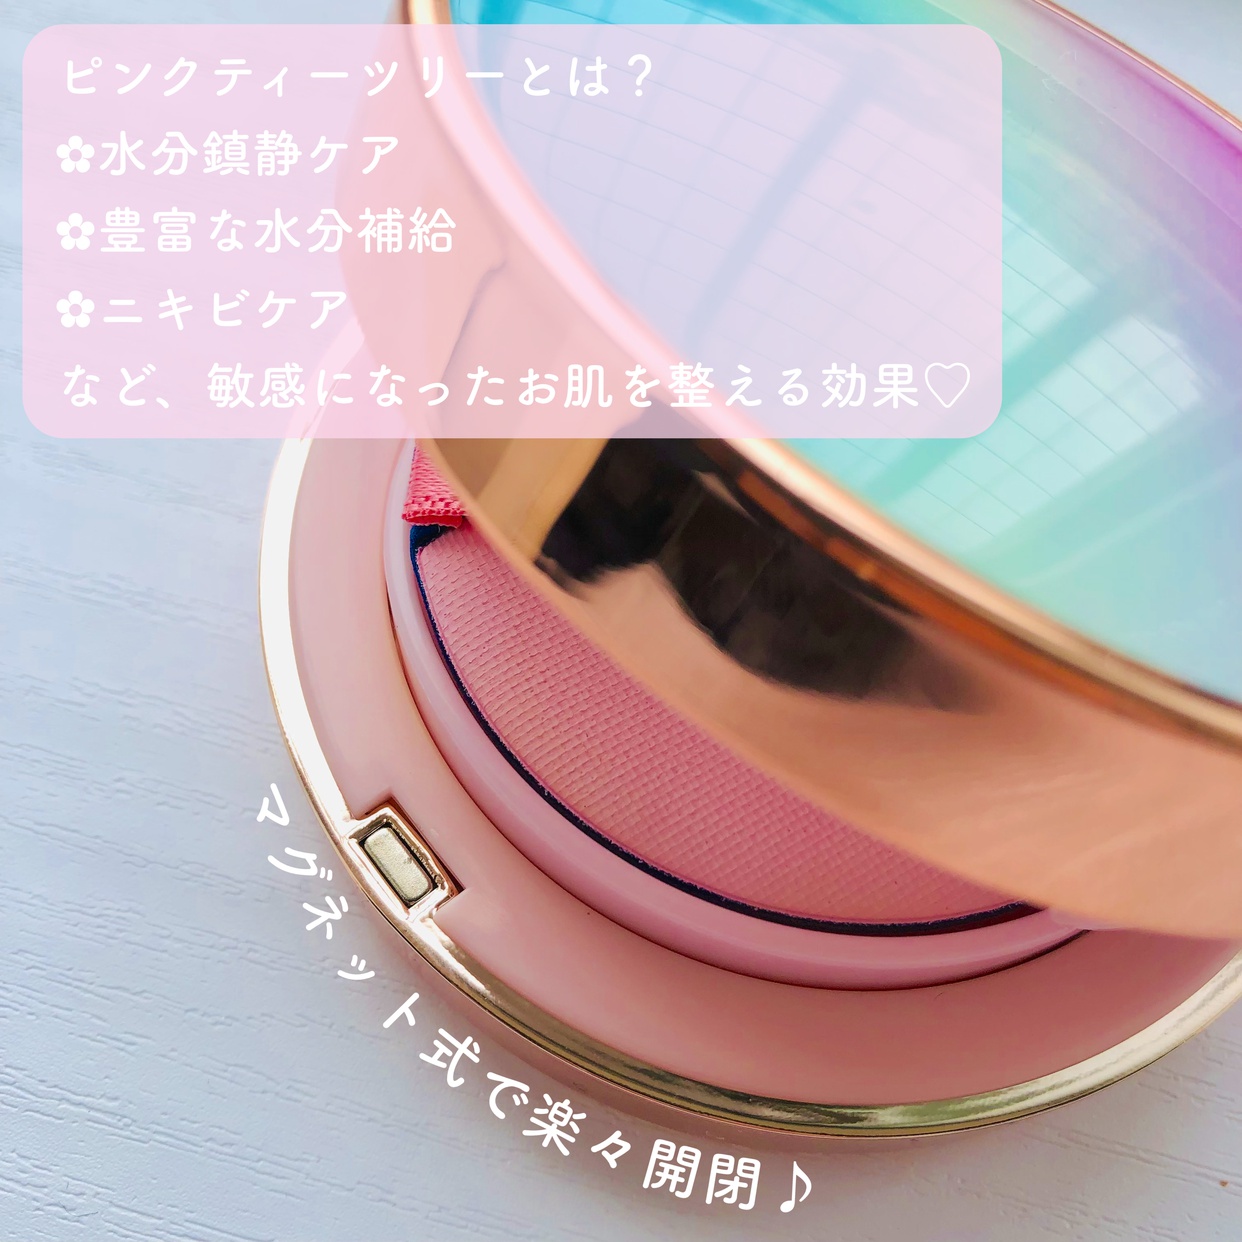 APLIN(アプリン) ピンクティーツリーカバークッションを使ったsachikoさんのクチコミ画像3